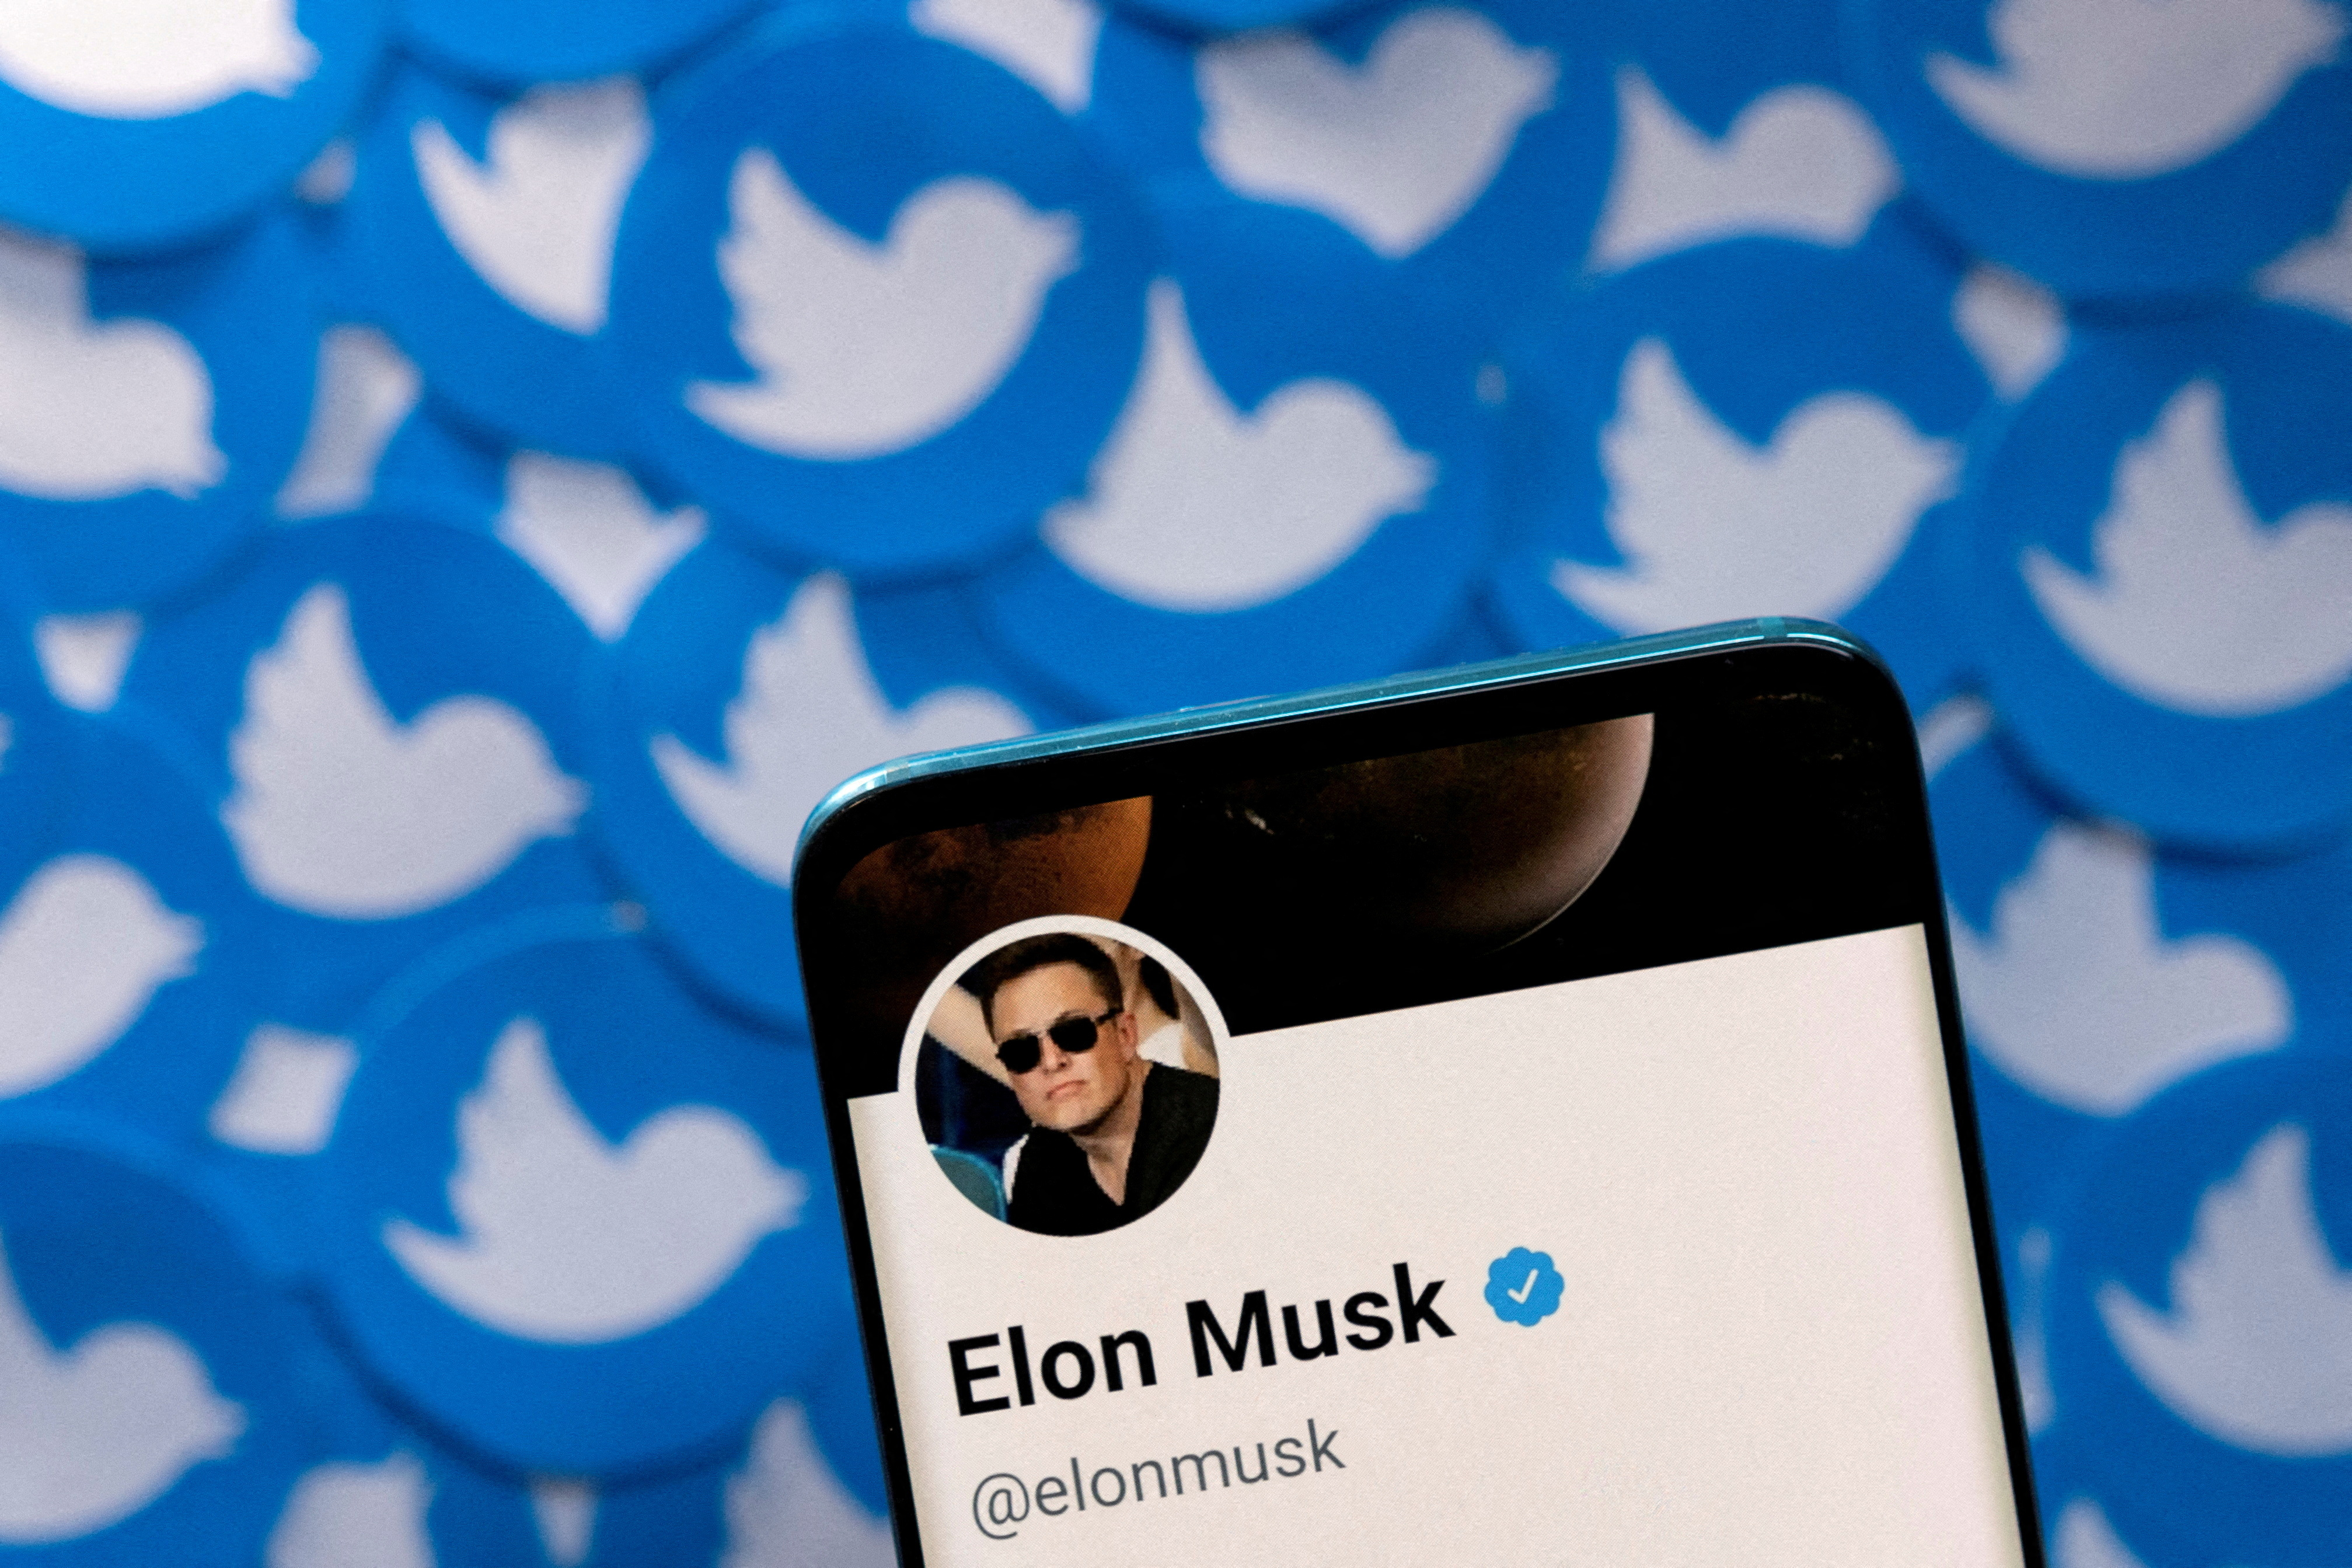 La ilustración muestra el perfil de Twitter de Elon Musk en un teléfono inteligente y los logotipos de Twitter impresos.